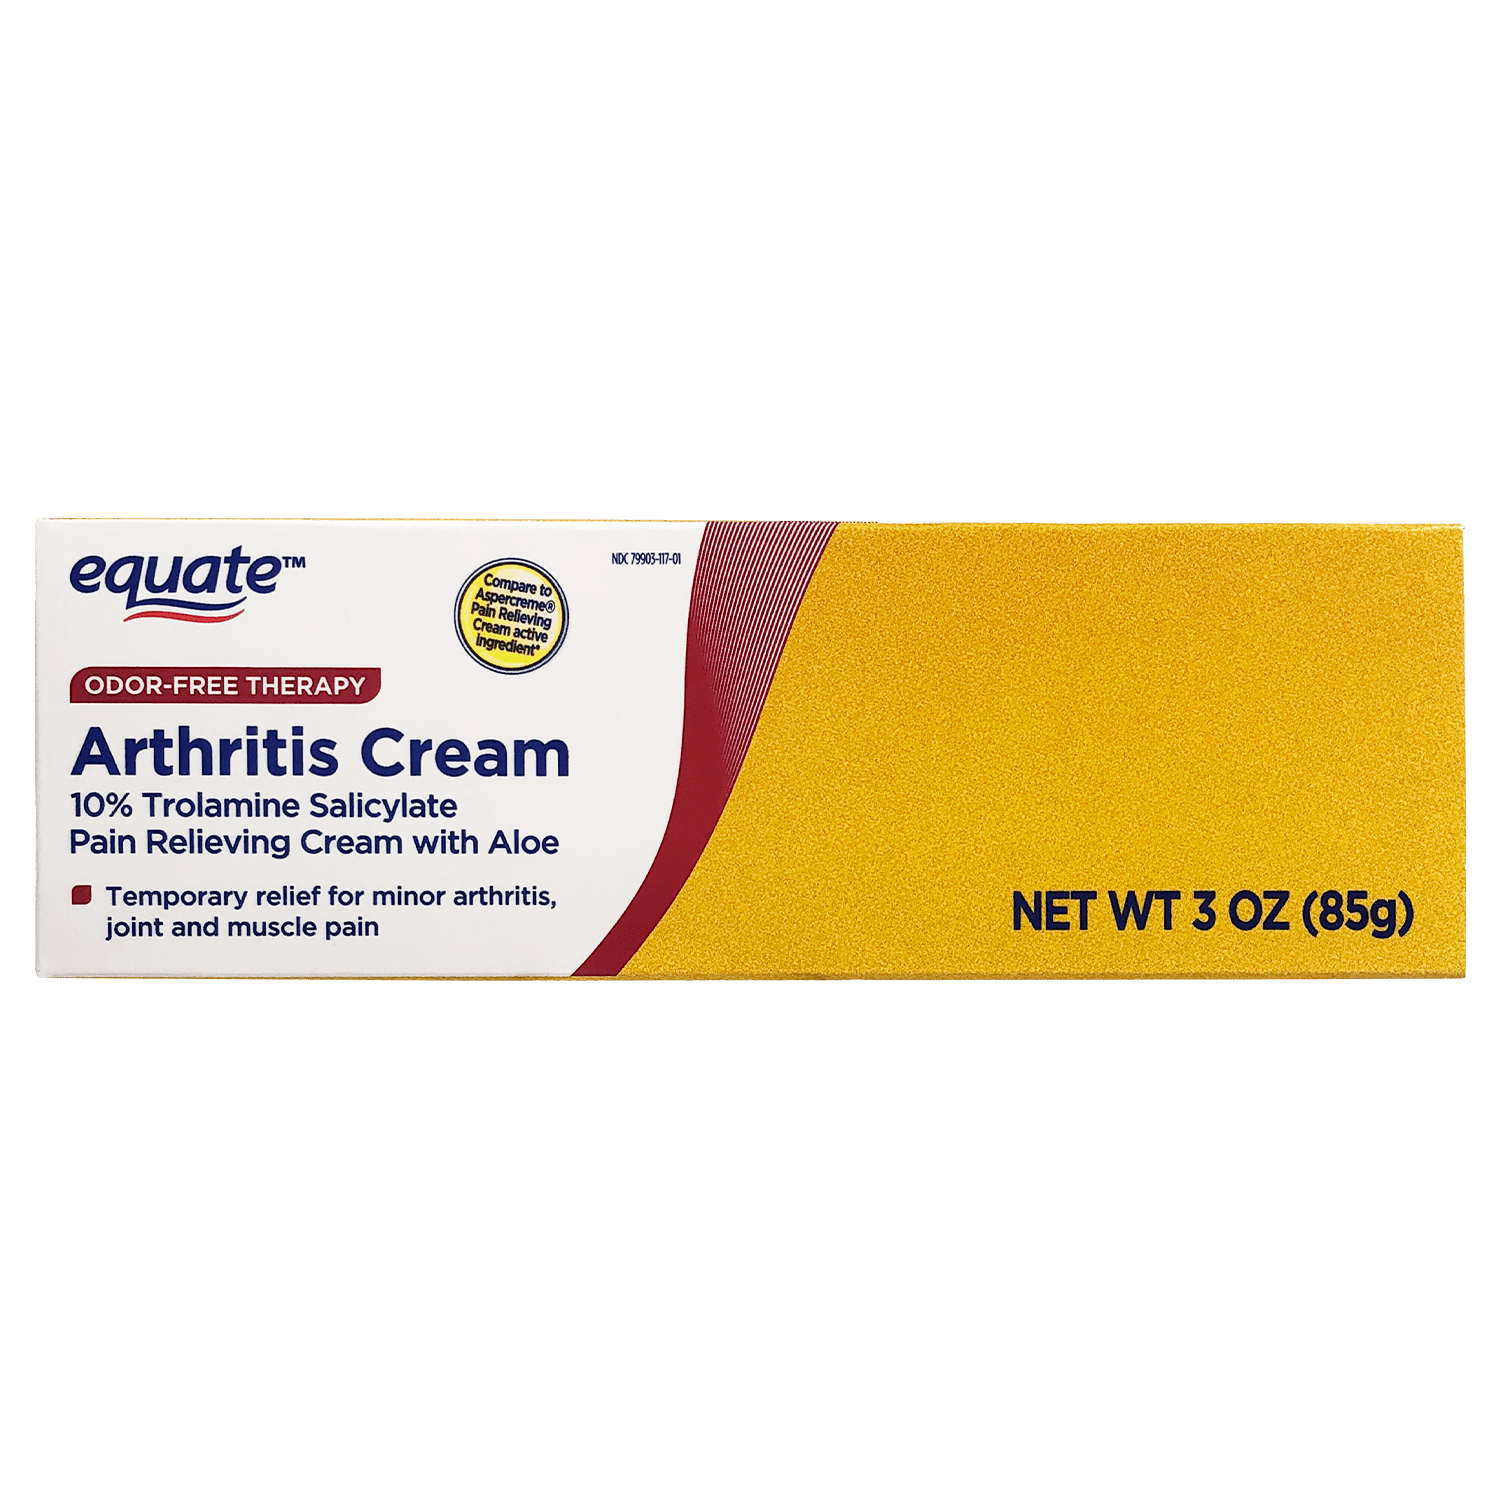 Equate Arthritis Cream, 10% Trolamine Salicylate with Aloe, 3 oz